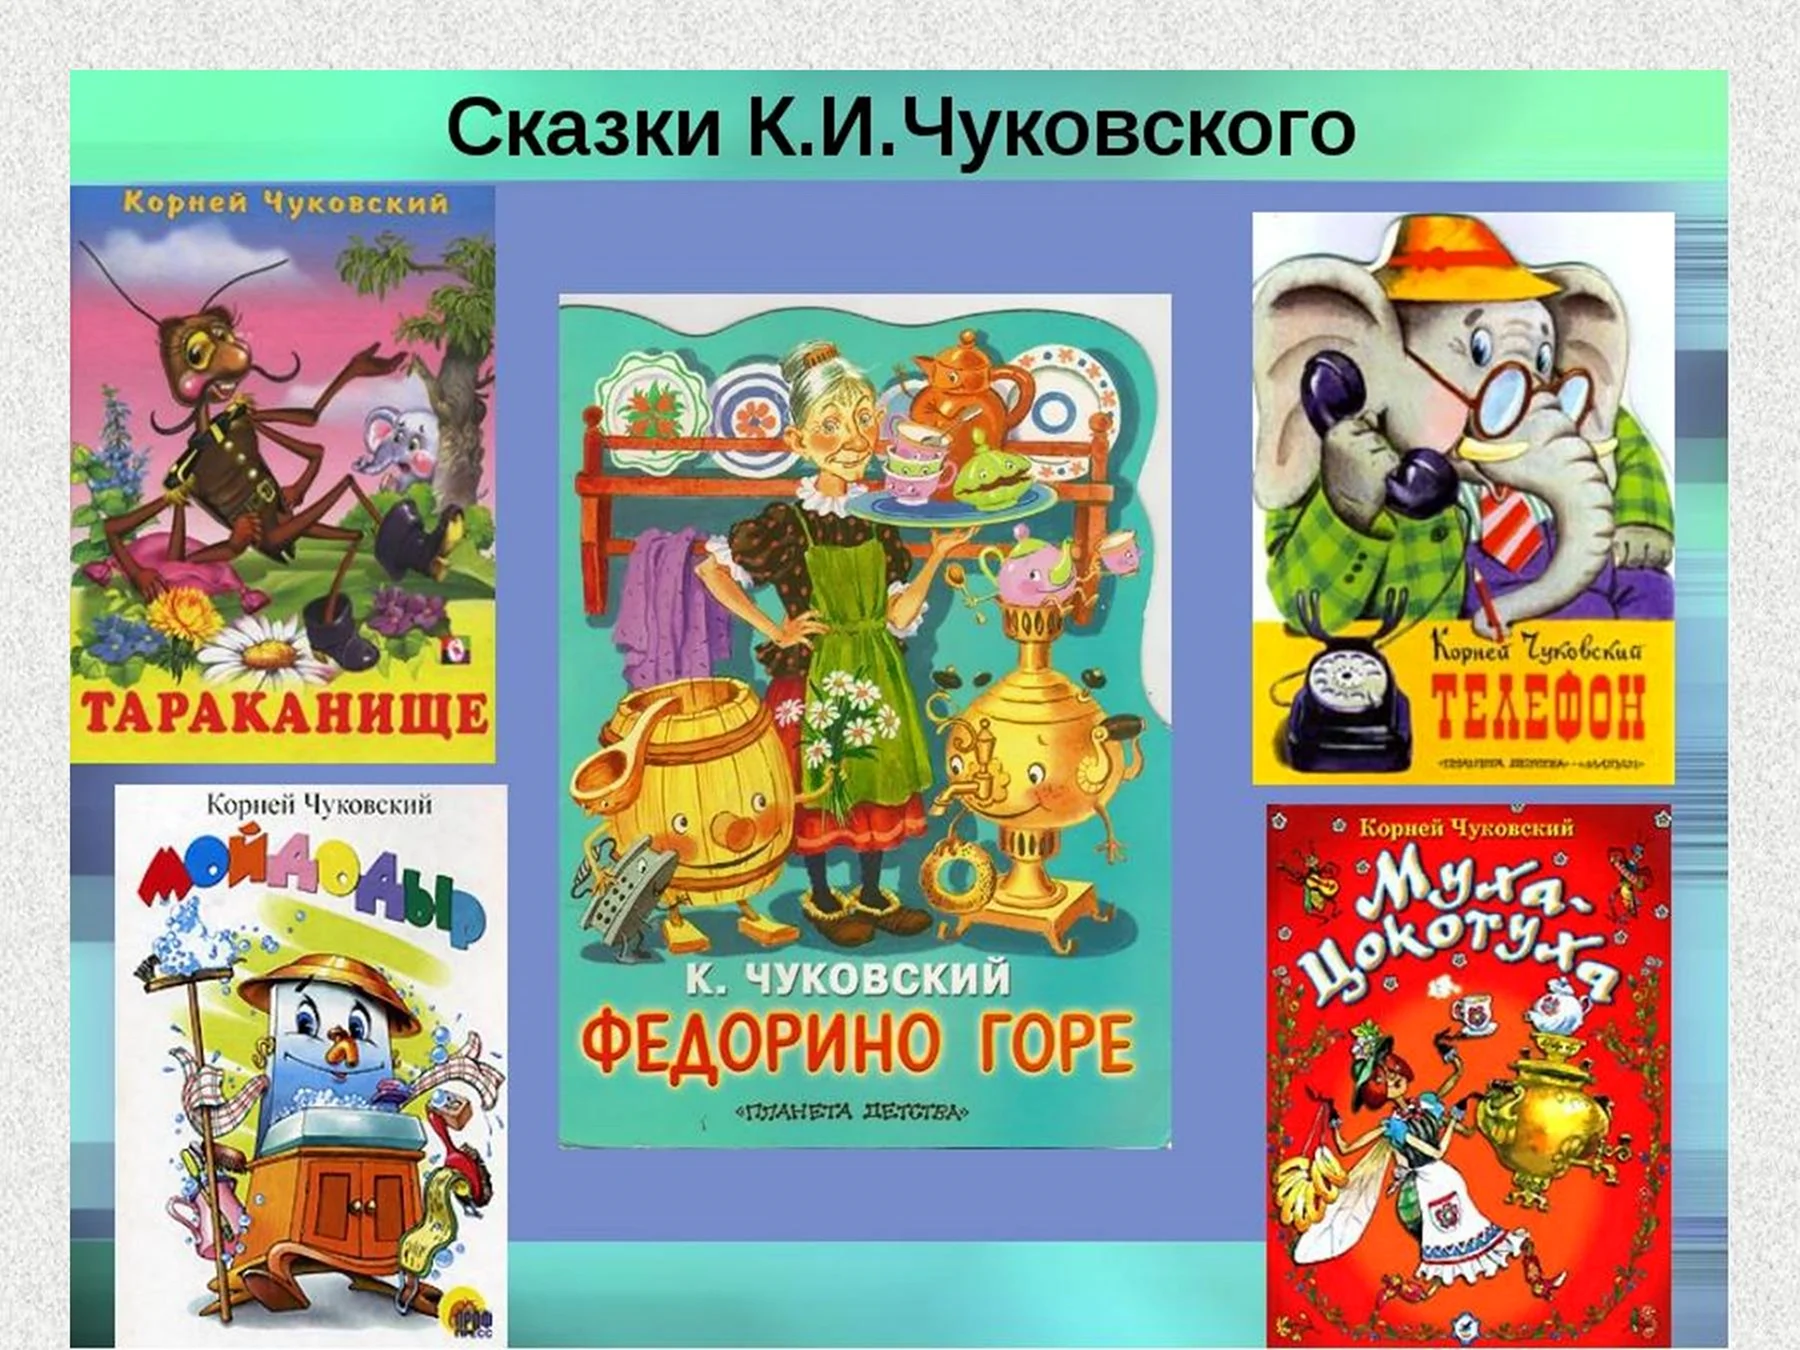 Герои произведений Корнея Чуковского для детей